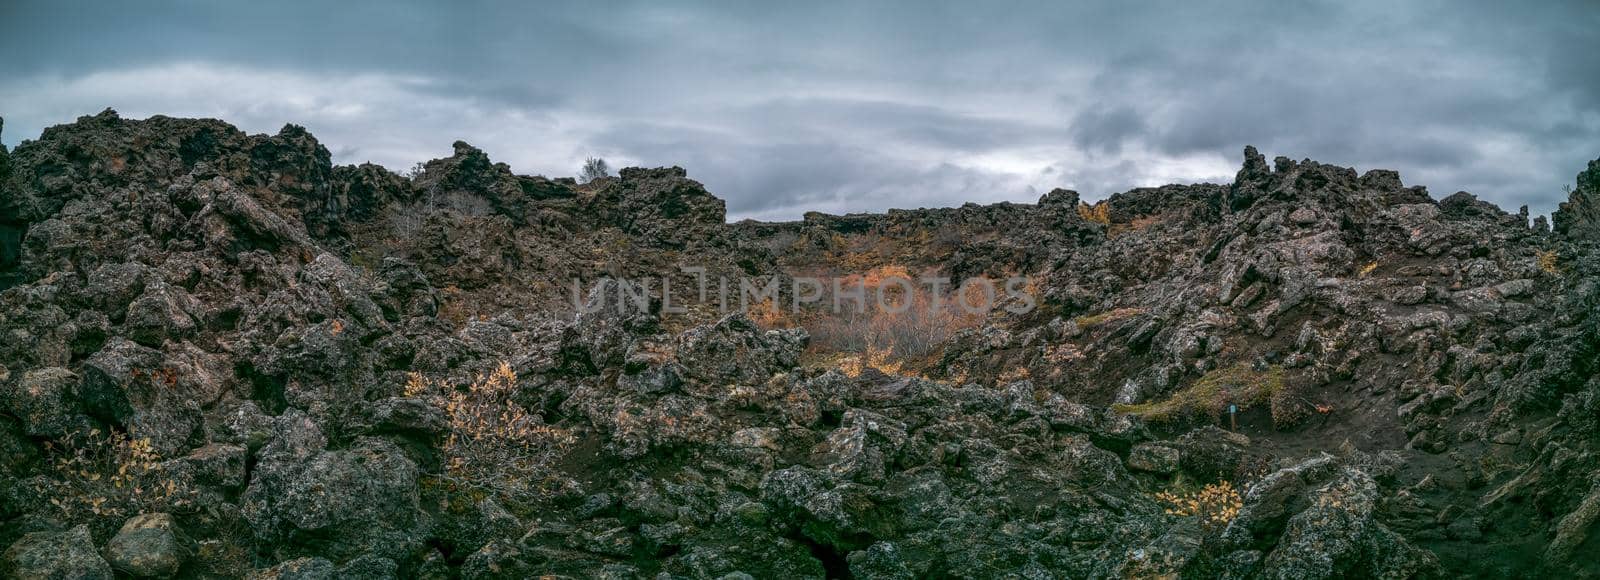 Huge impressive lava fields in Iceland by FerradalFCG